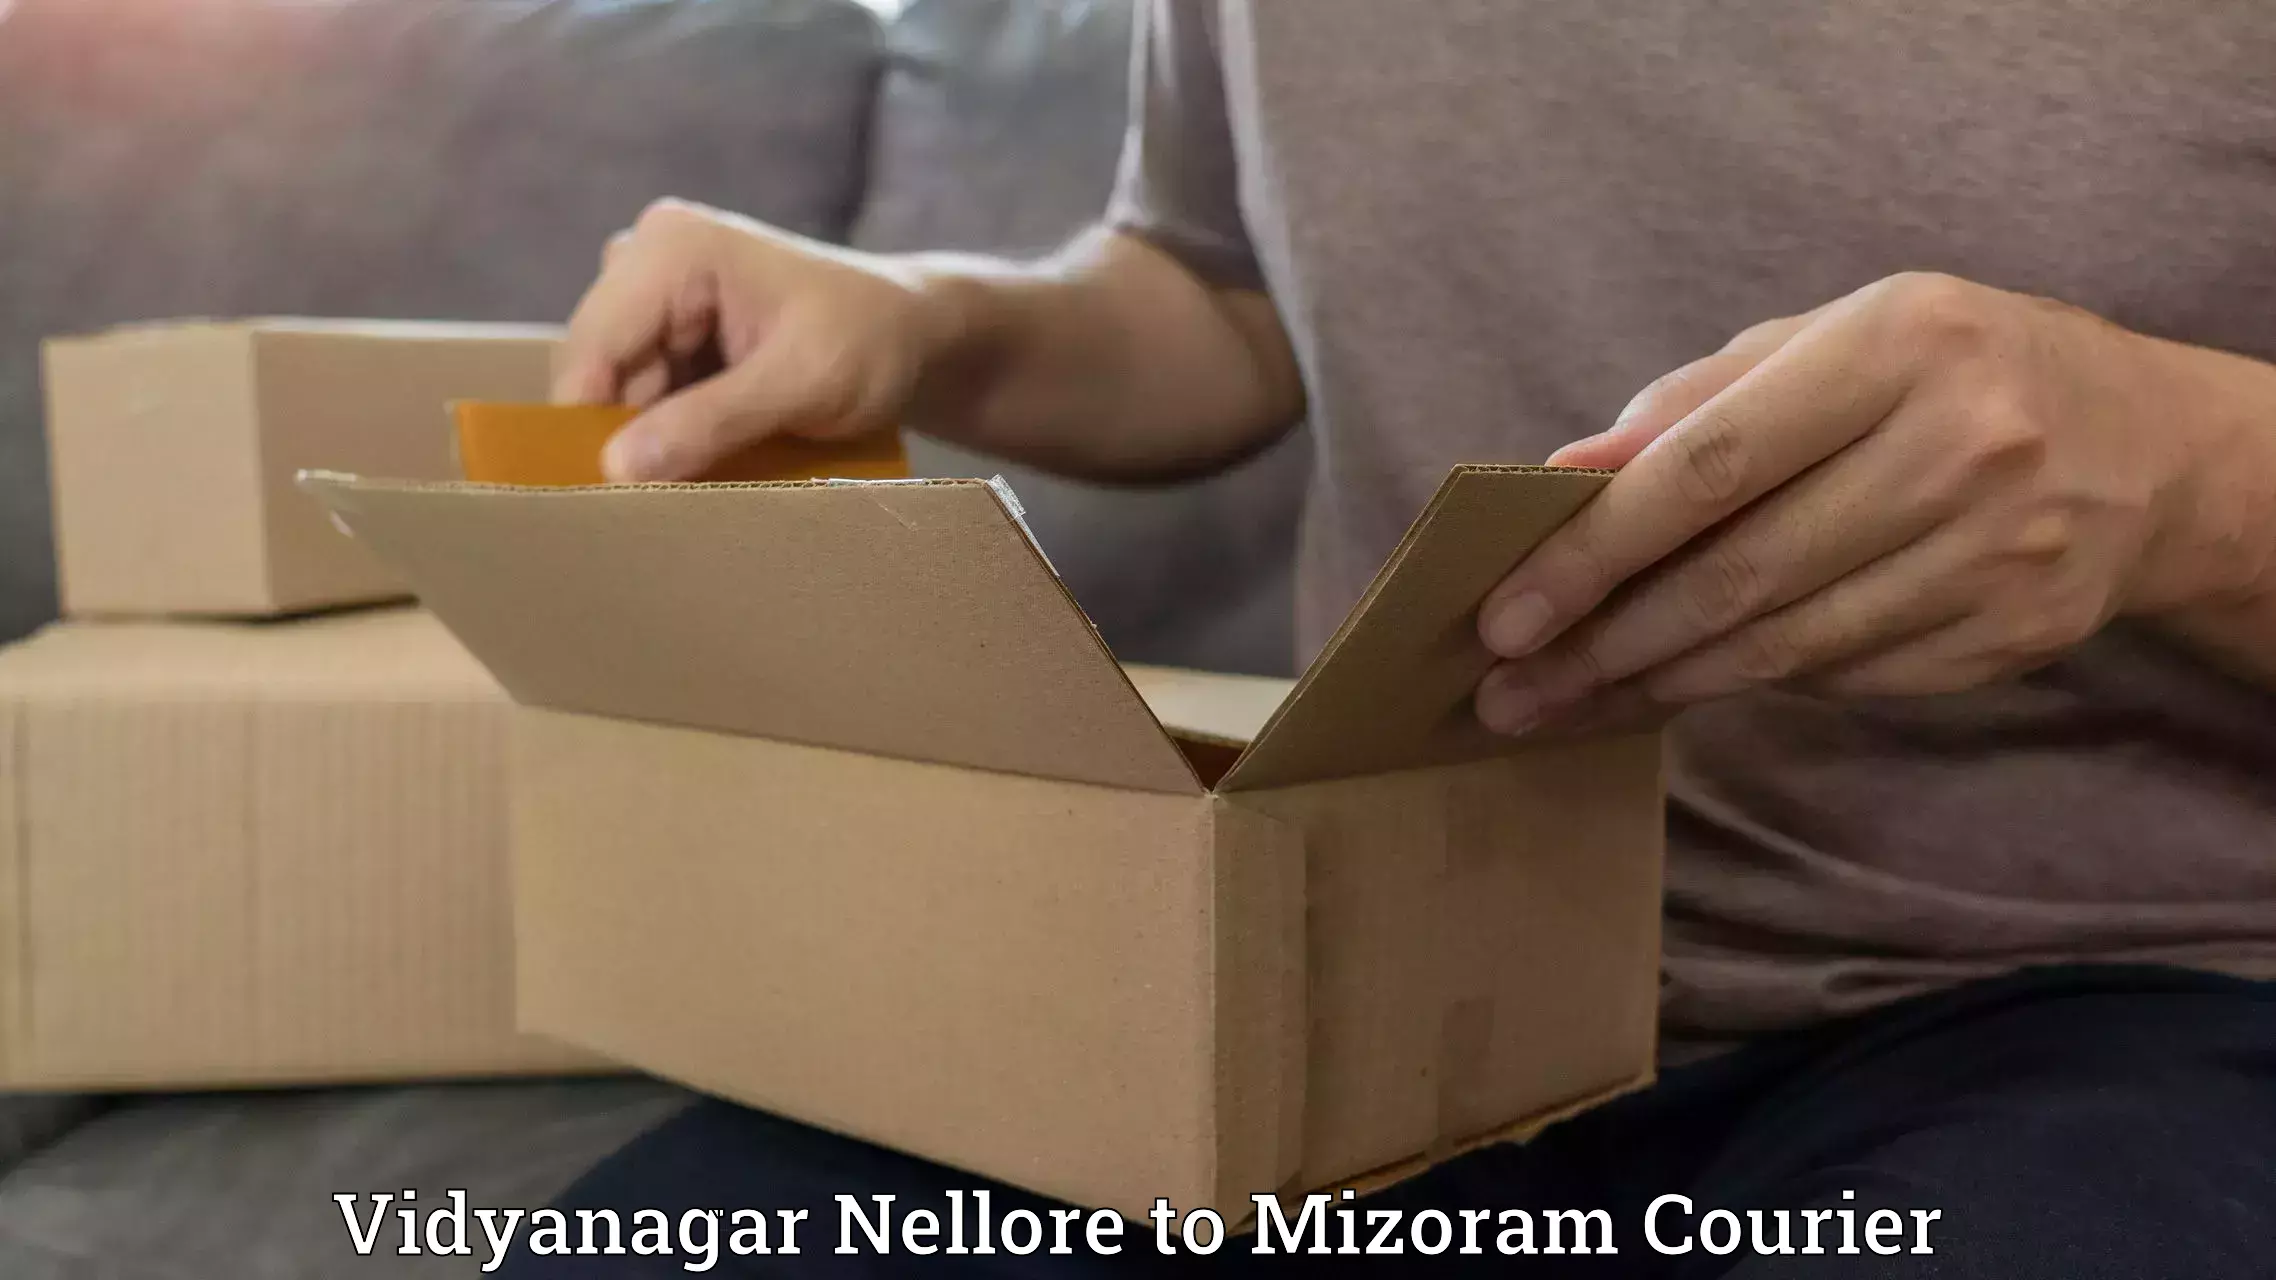 Courier app Vidyanagar Nellore to Mizoram